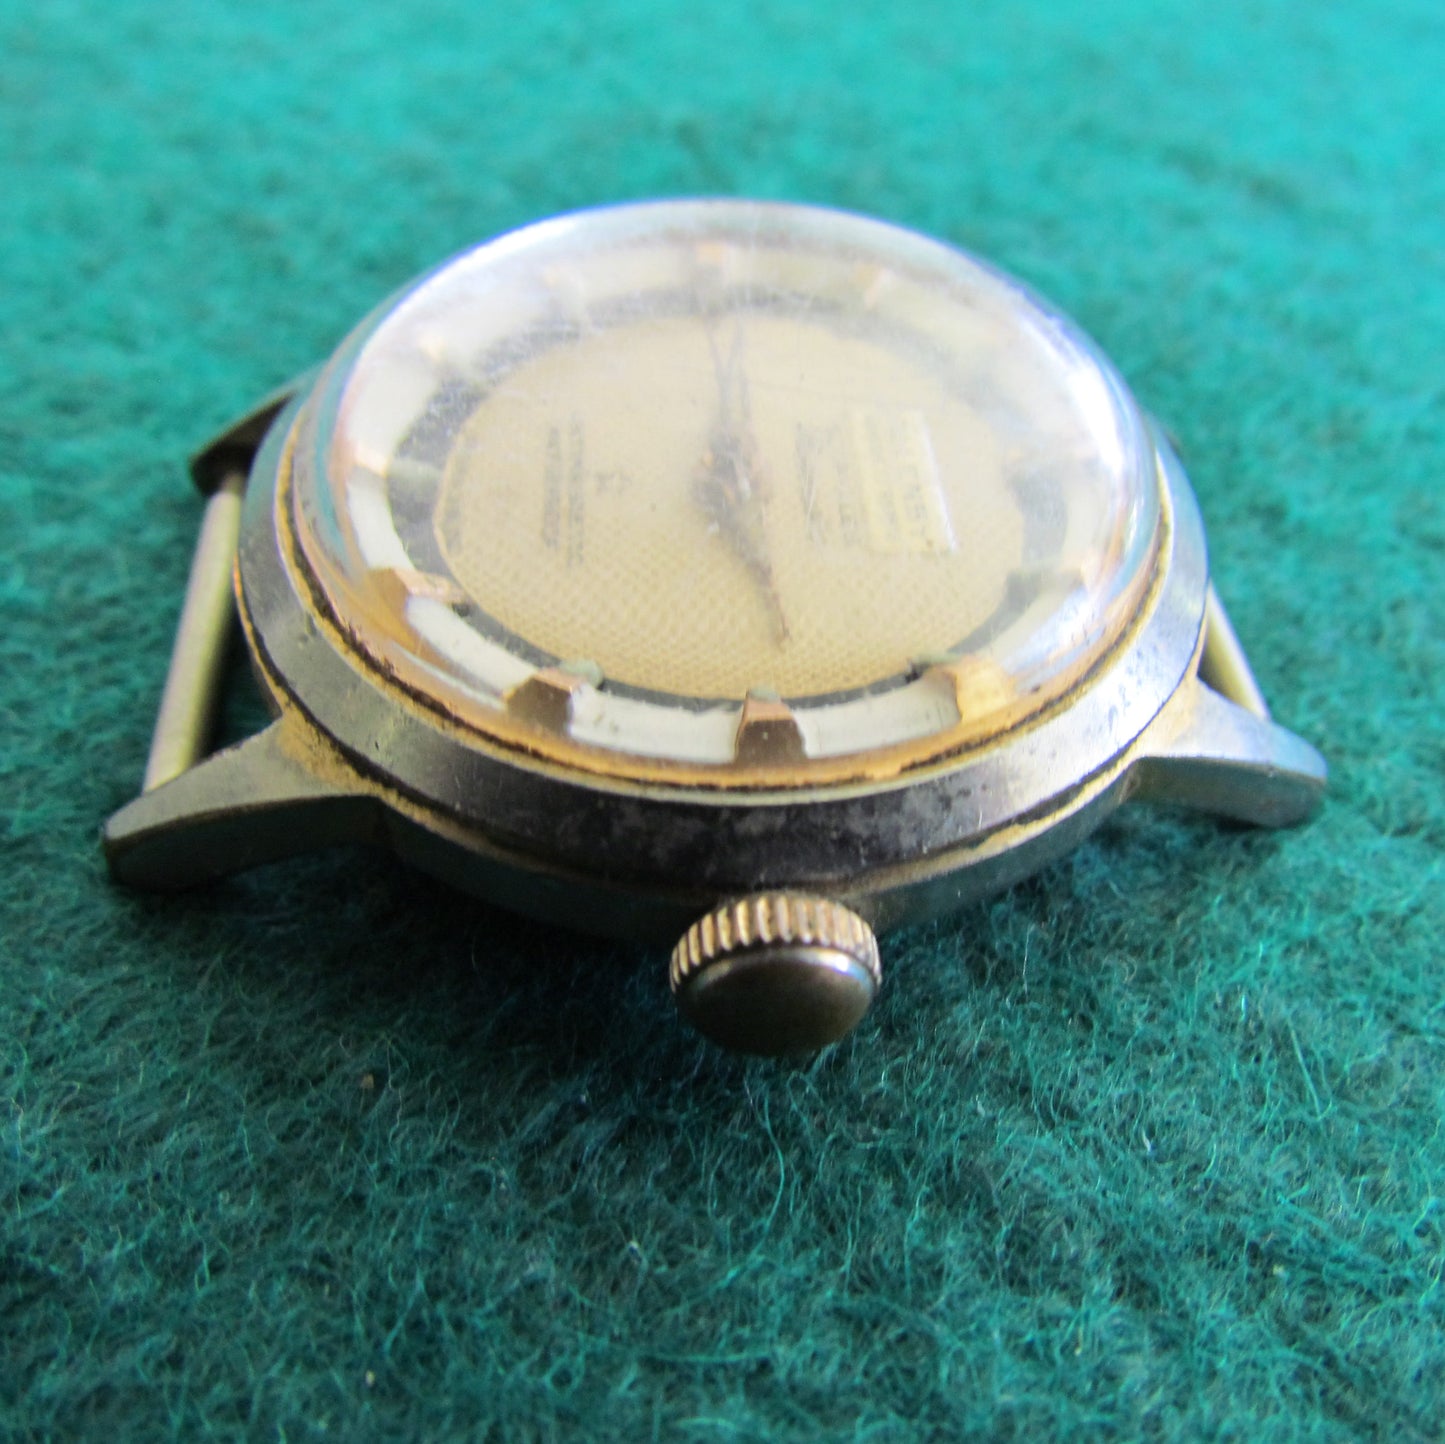 Allenby Goupilles Fleetmaster Mens Rolled Gold Wristwatch 31.5mm Case Diameter